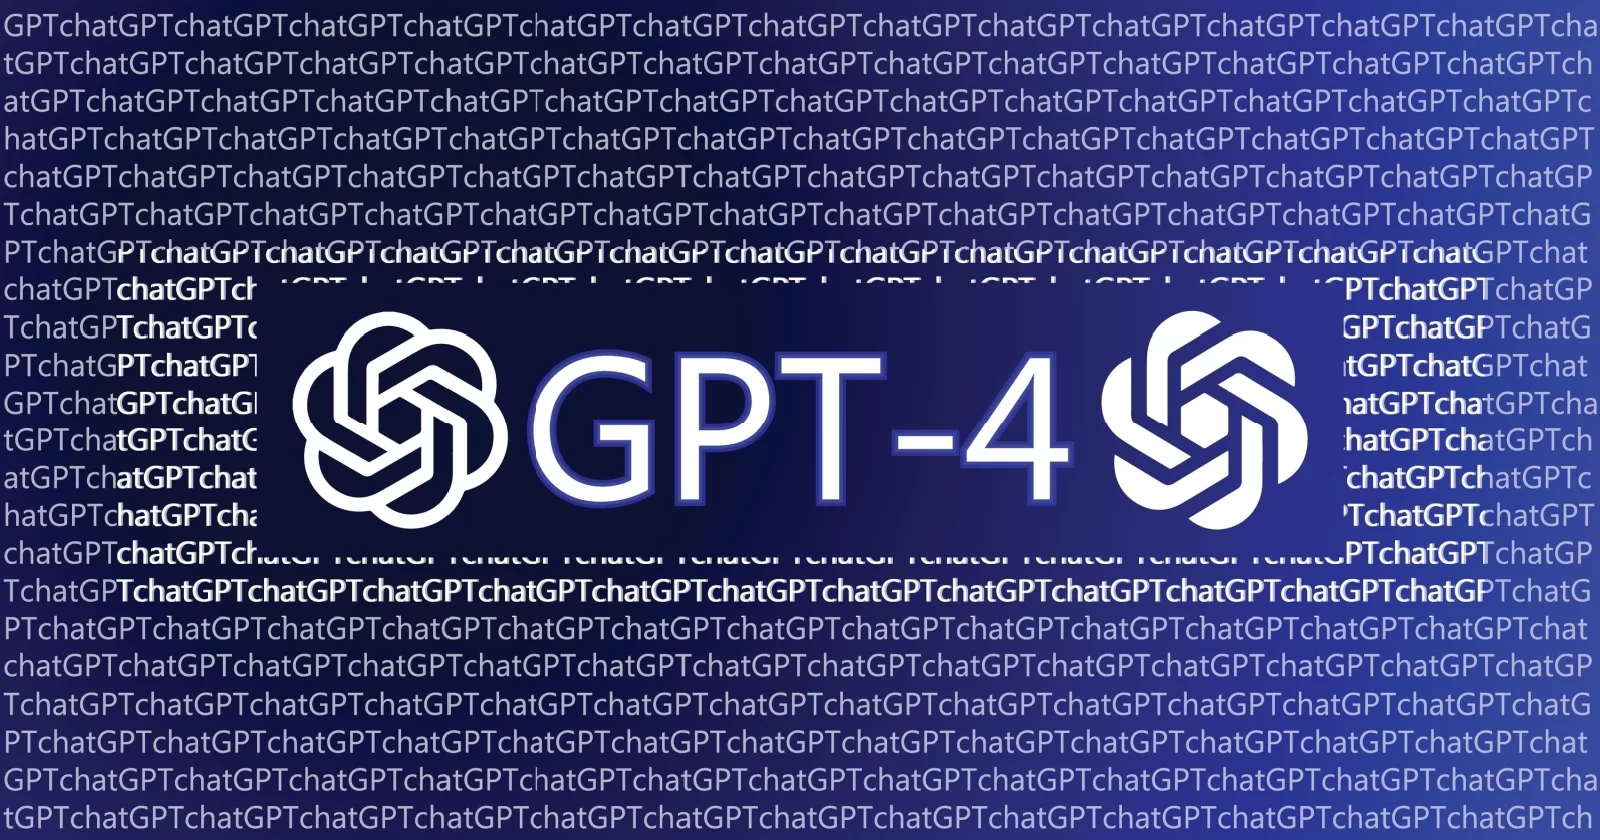 Yapay zekânın geldiği son nokta: GPT-4